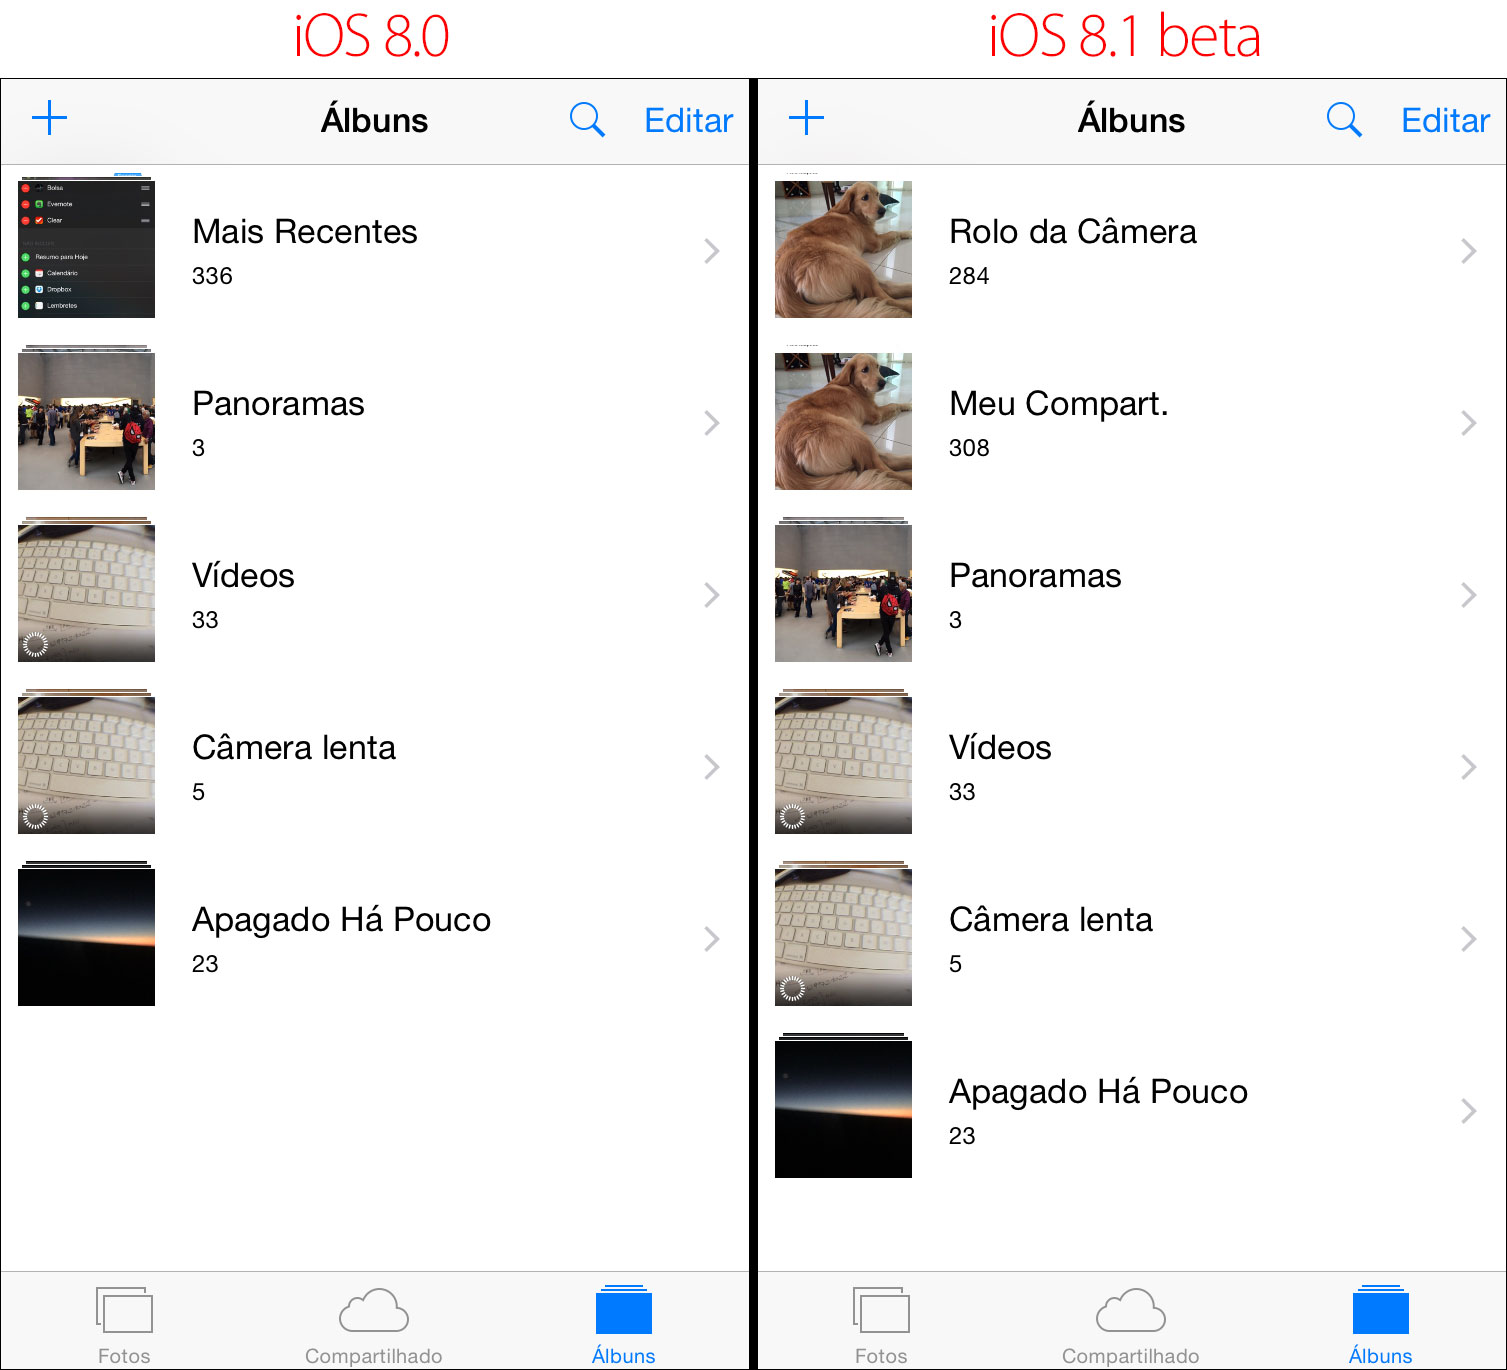 Rolo da Câmera - iOS 8.1